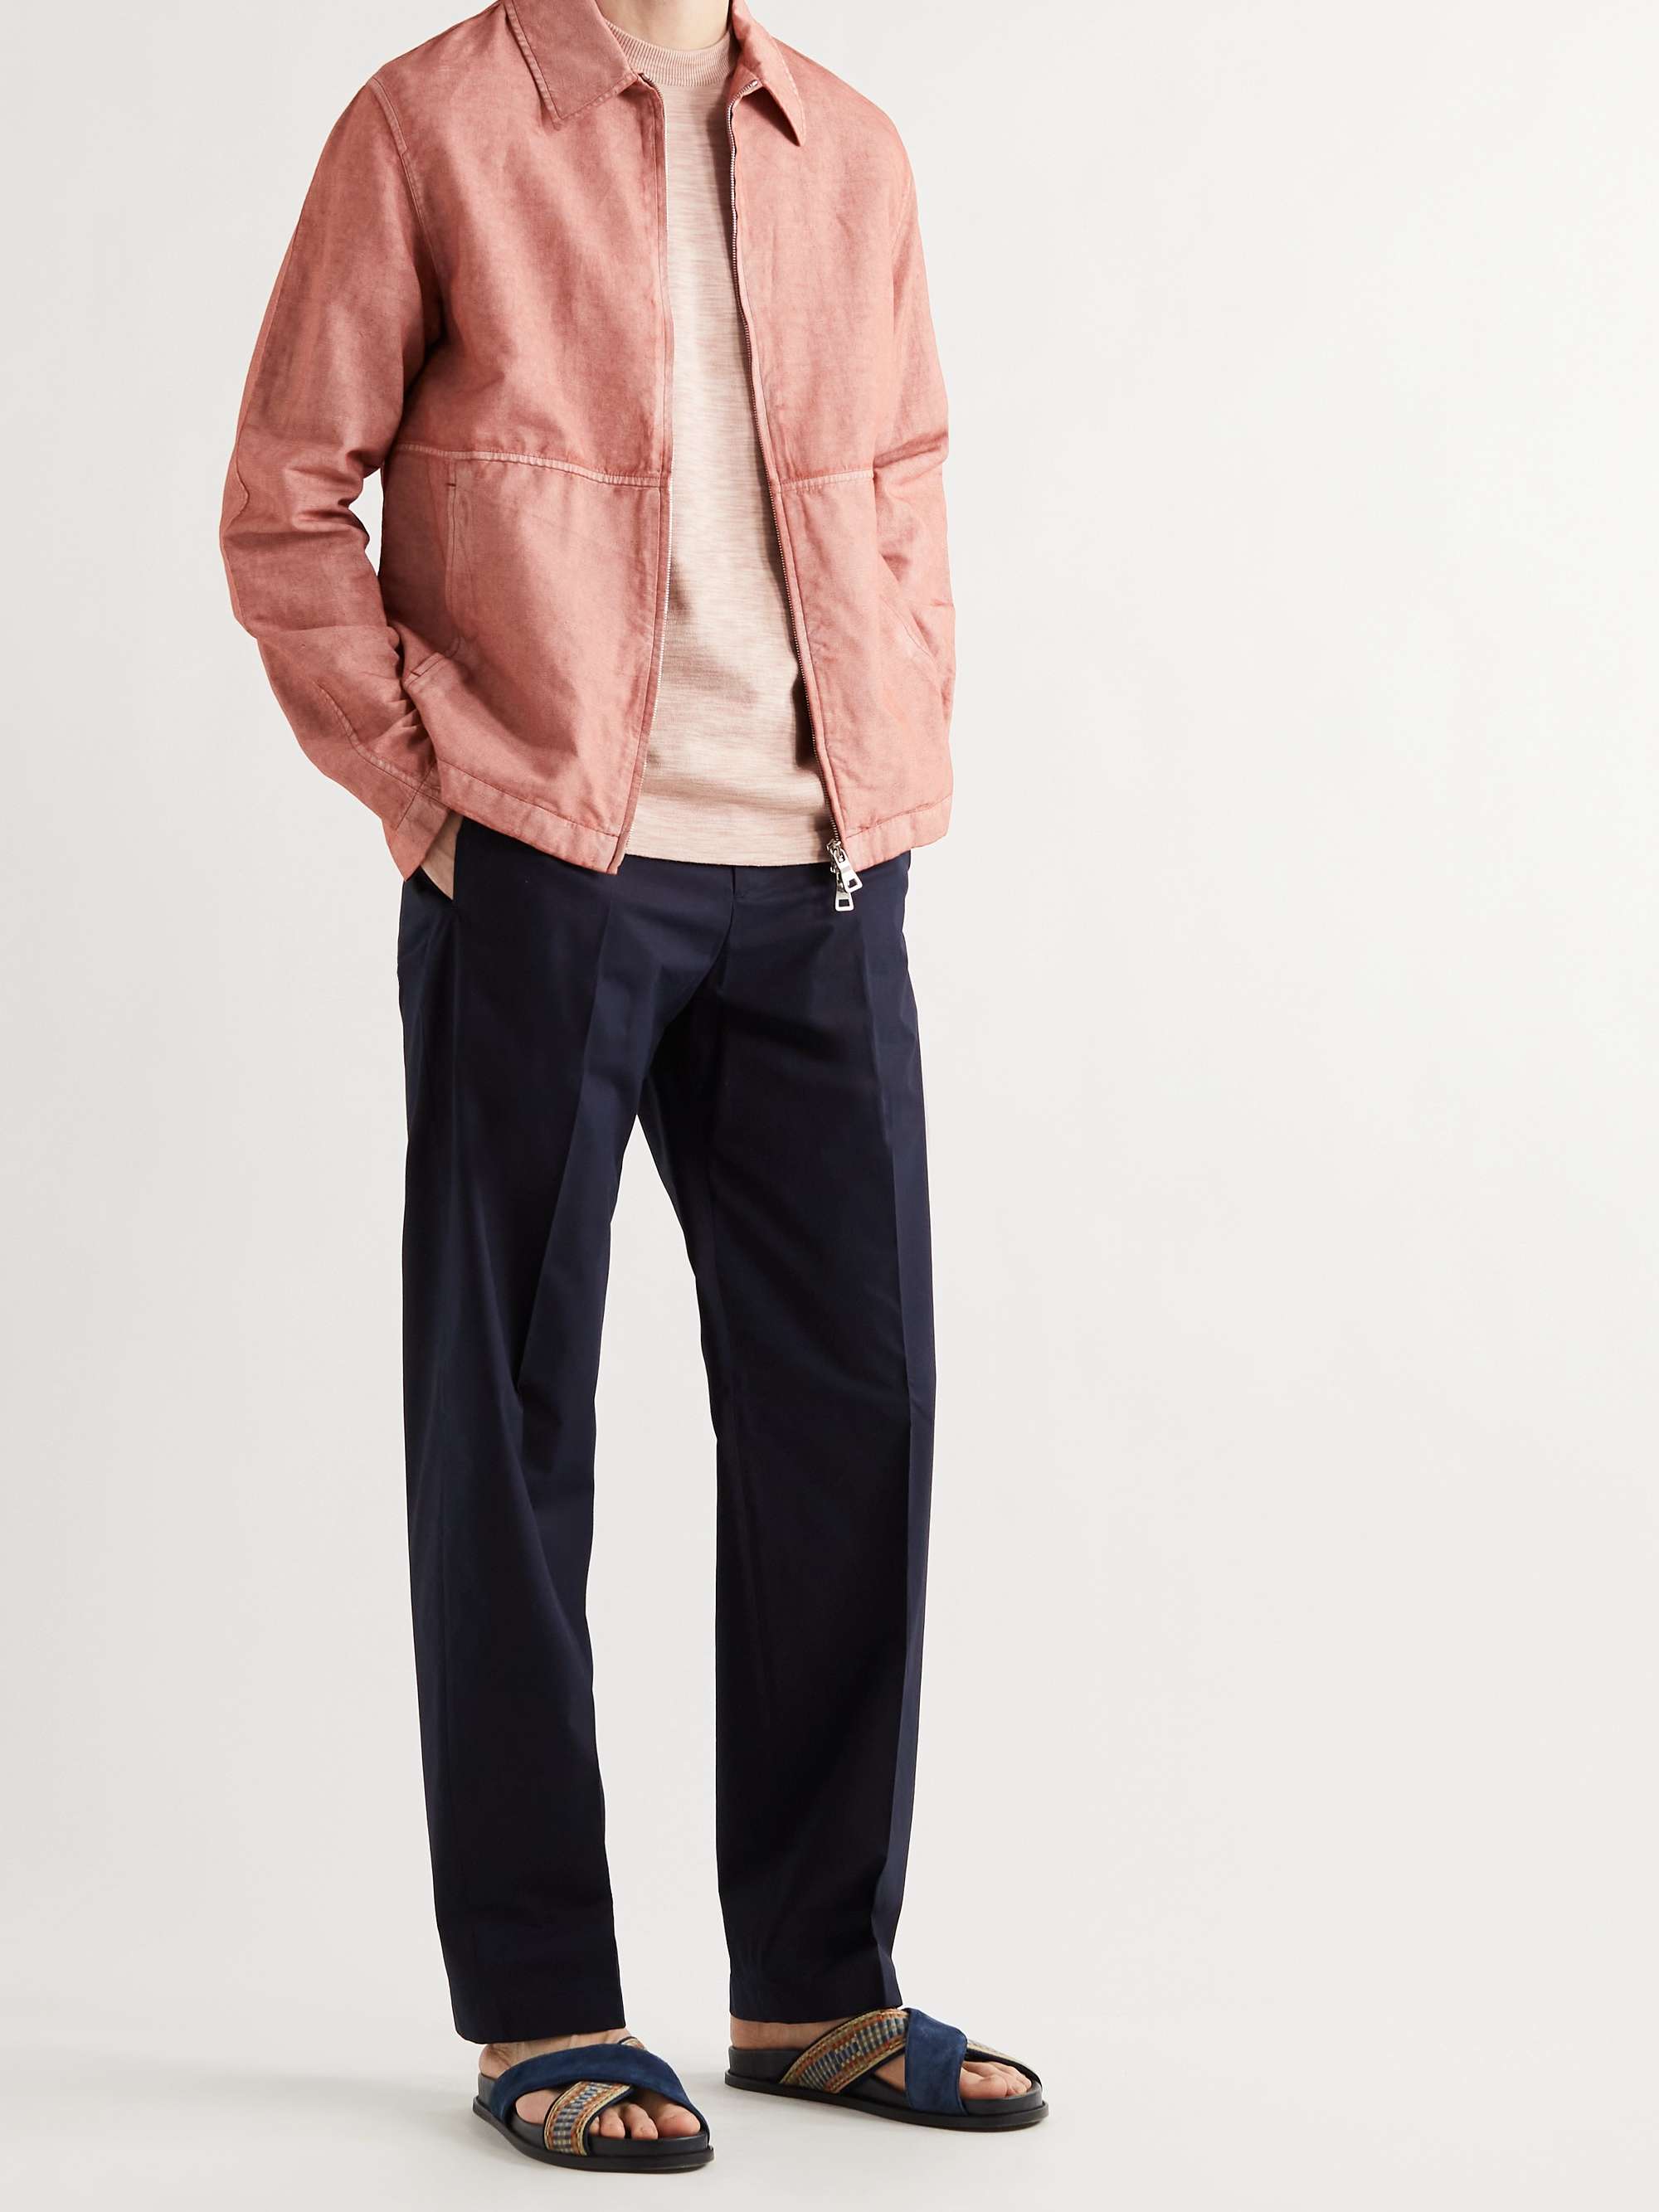 MR P. Resist-Dyed Cotton and Linen-Blend Blouson Jacket